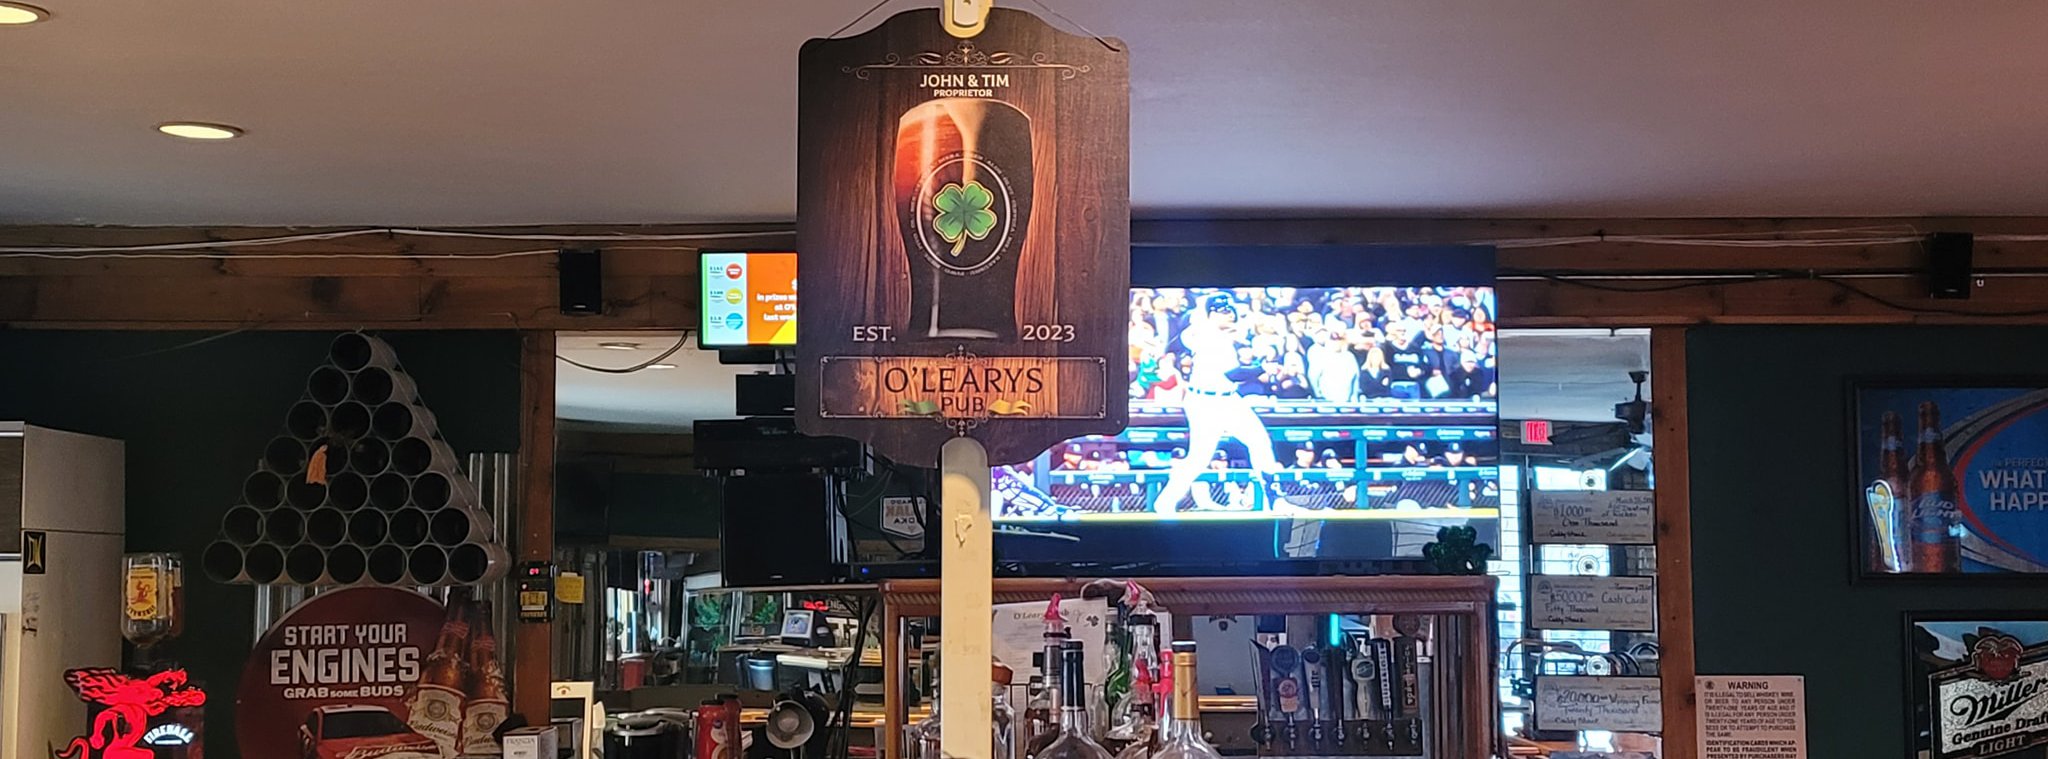 O'Learys Pub in Colorado Springs, Colorado